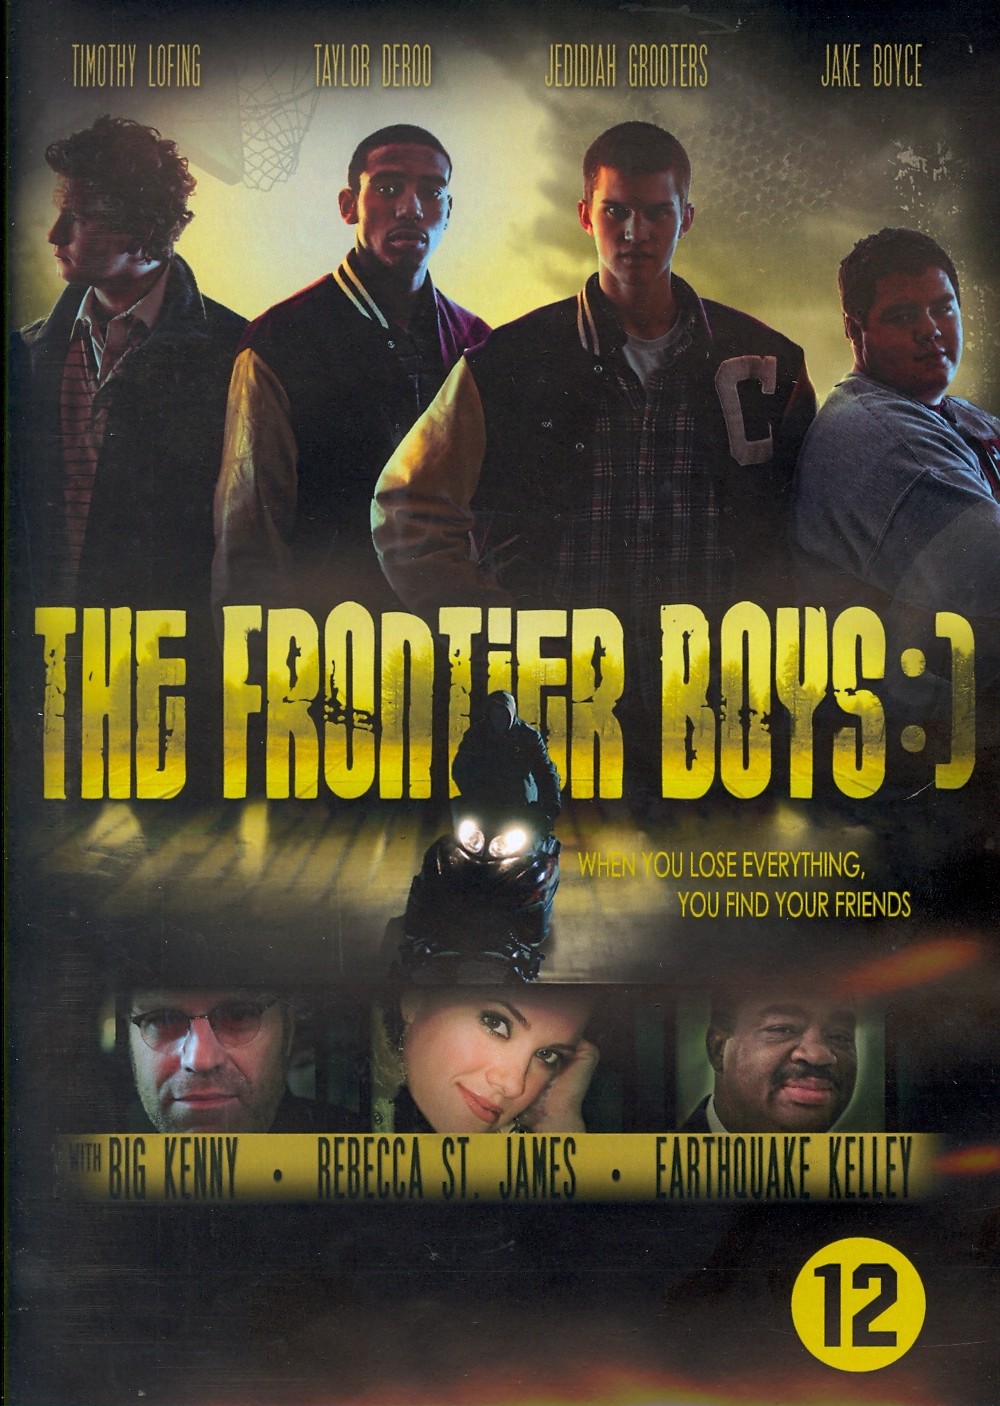 Frontier boys